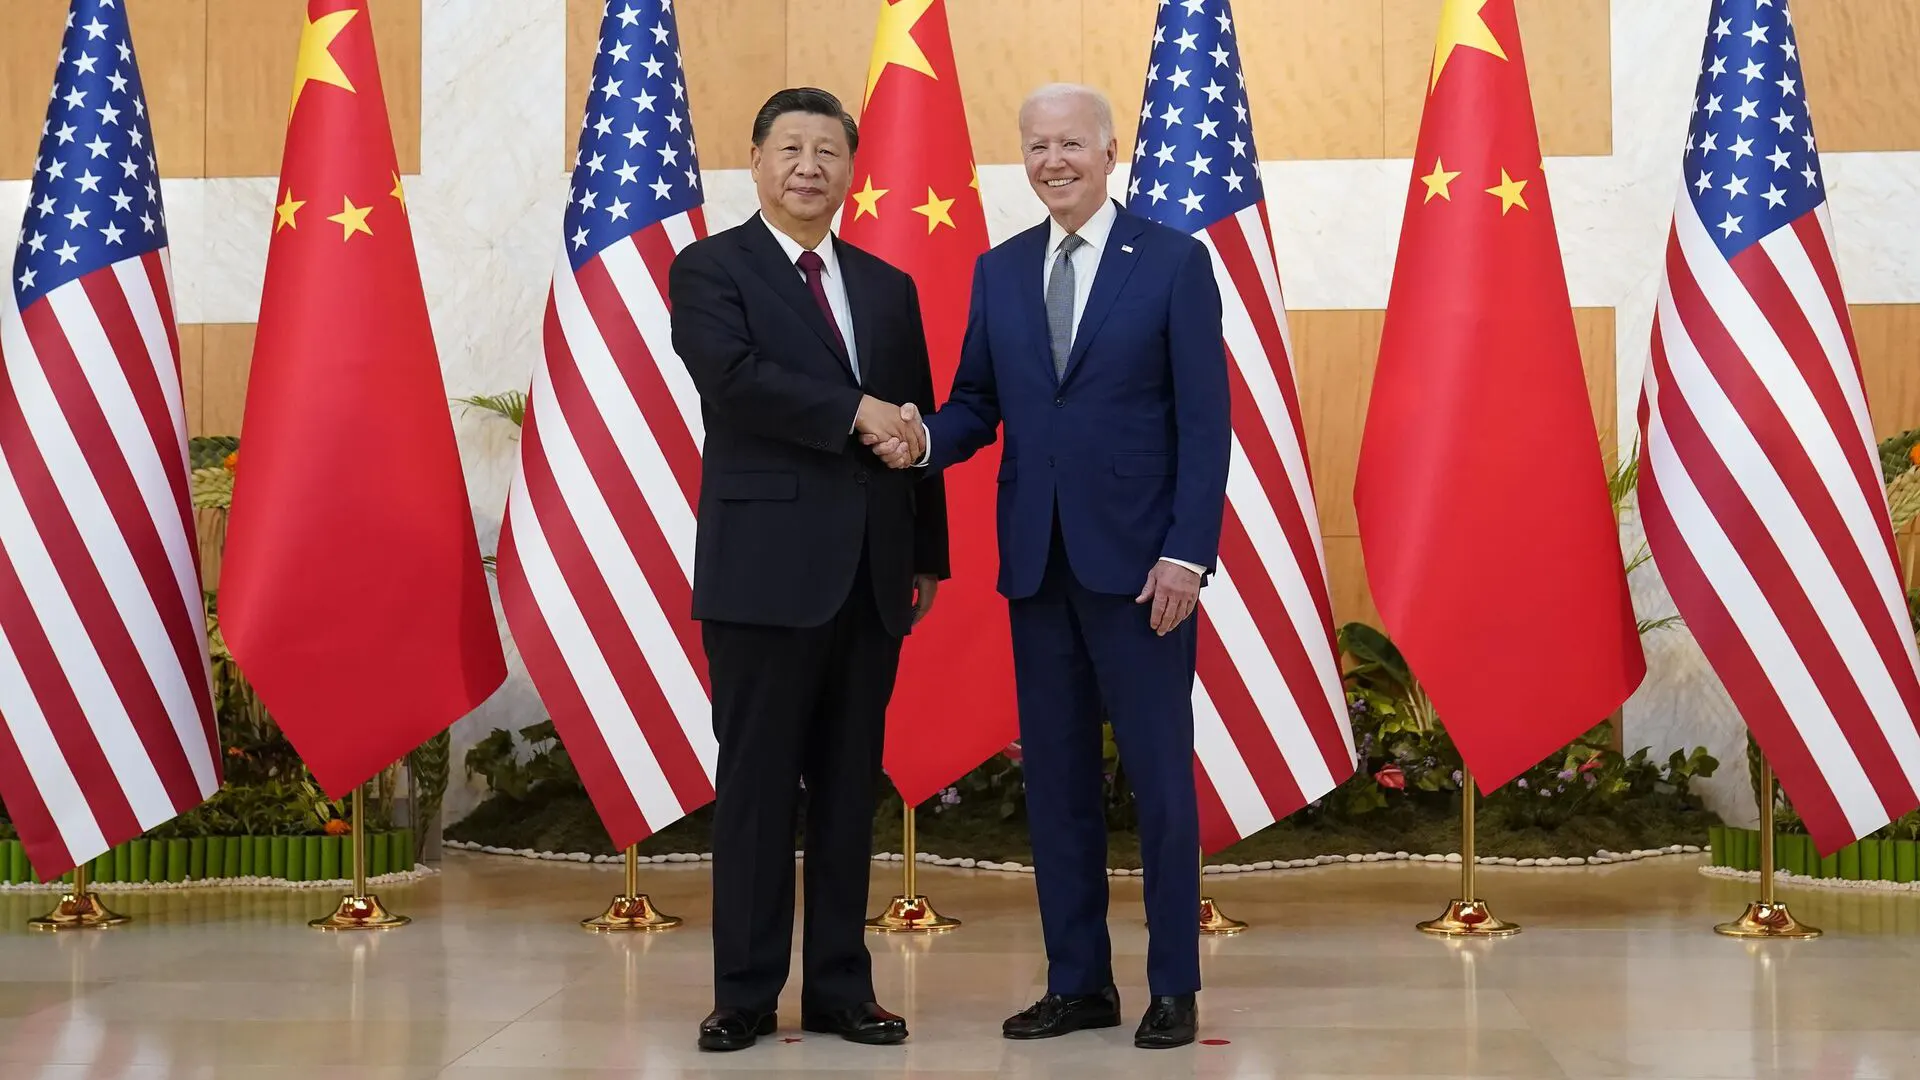 Америке критически не хватает экспертов по Китаю